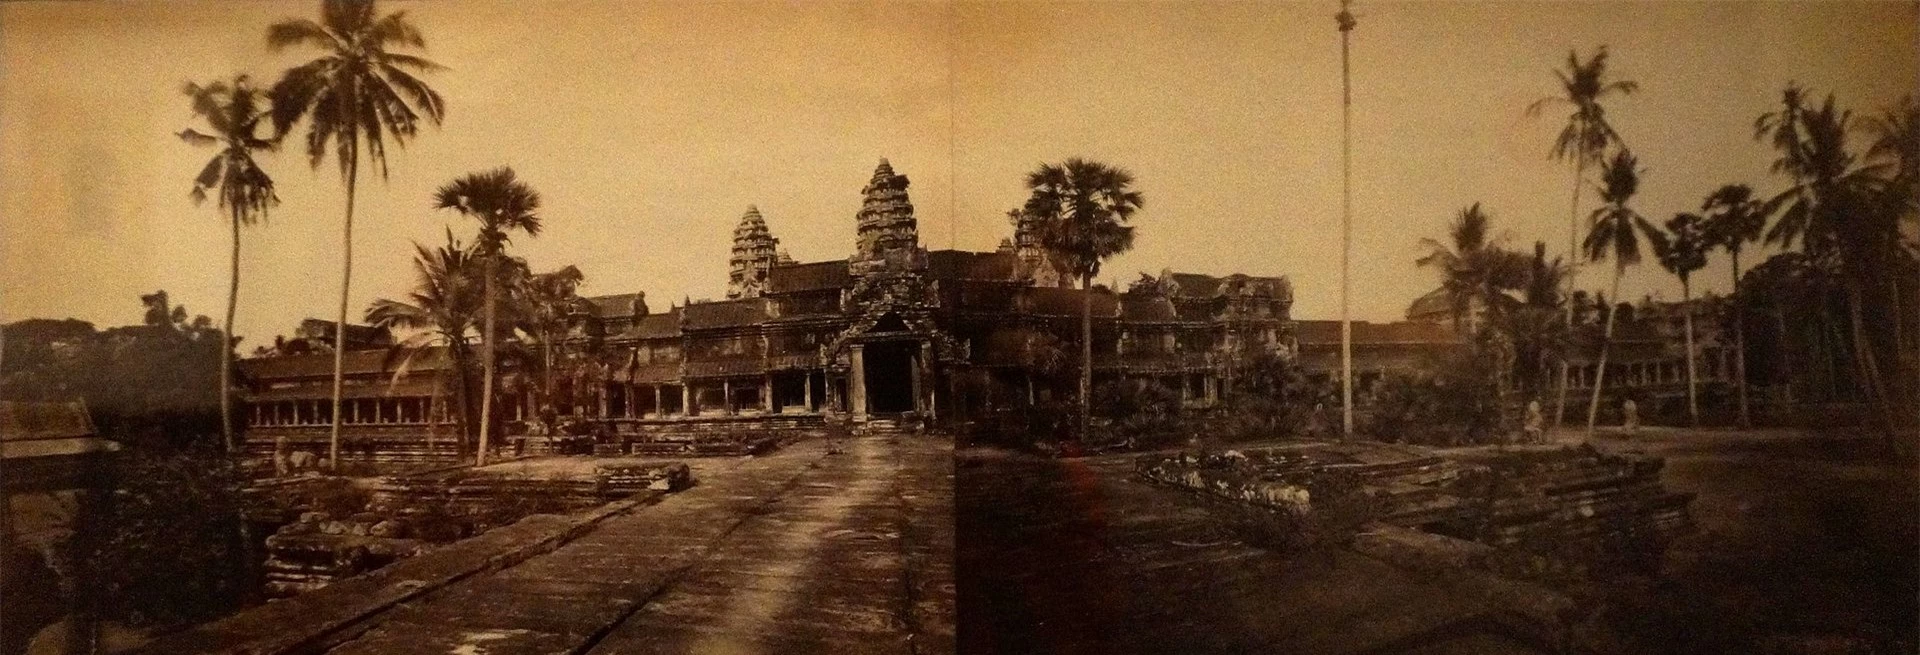 Angkor Wat năm 1870, do Émile Gsell chụp. Ảnh: Wikimedia